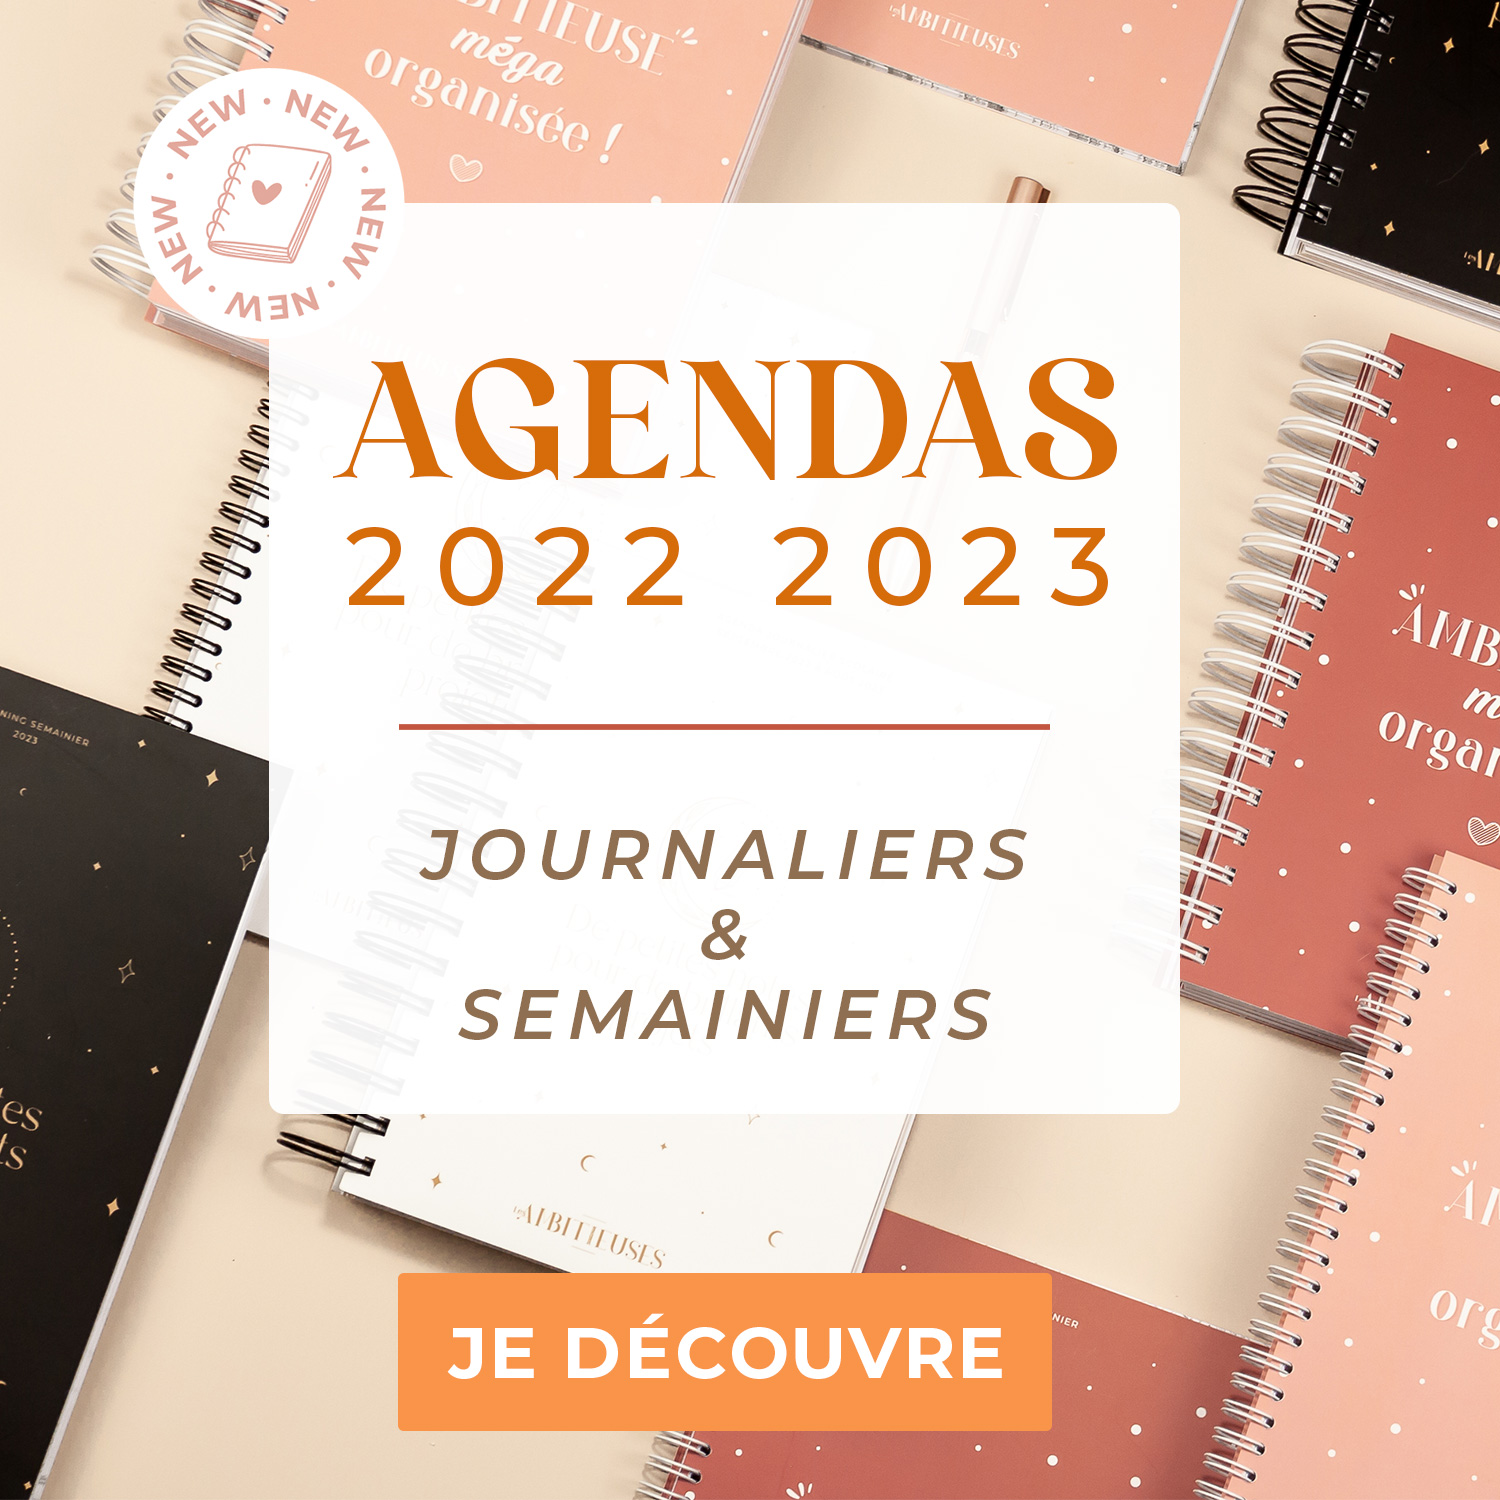 Nouveauté agendas 2022/2023